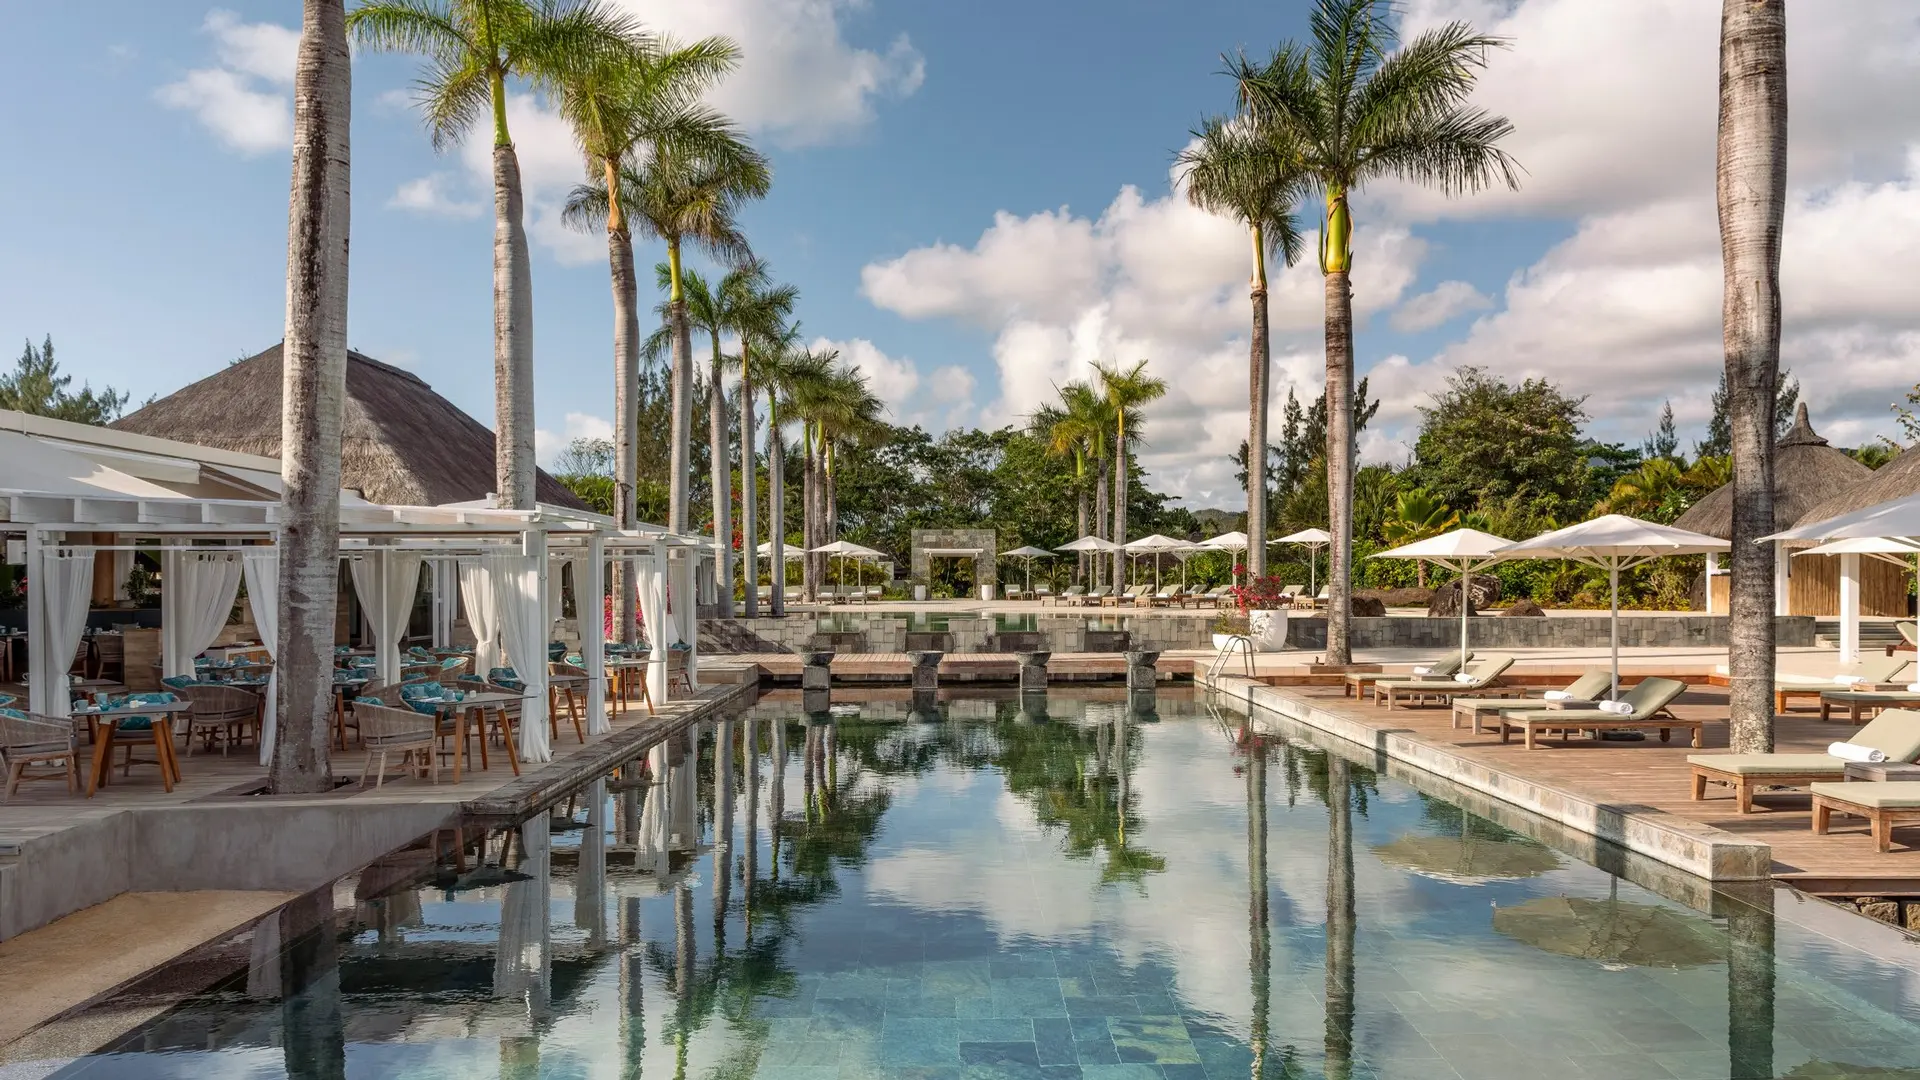 Hotel review Service & Facilities' - Four Seasons Resort Mauritius at Anahita - 3